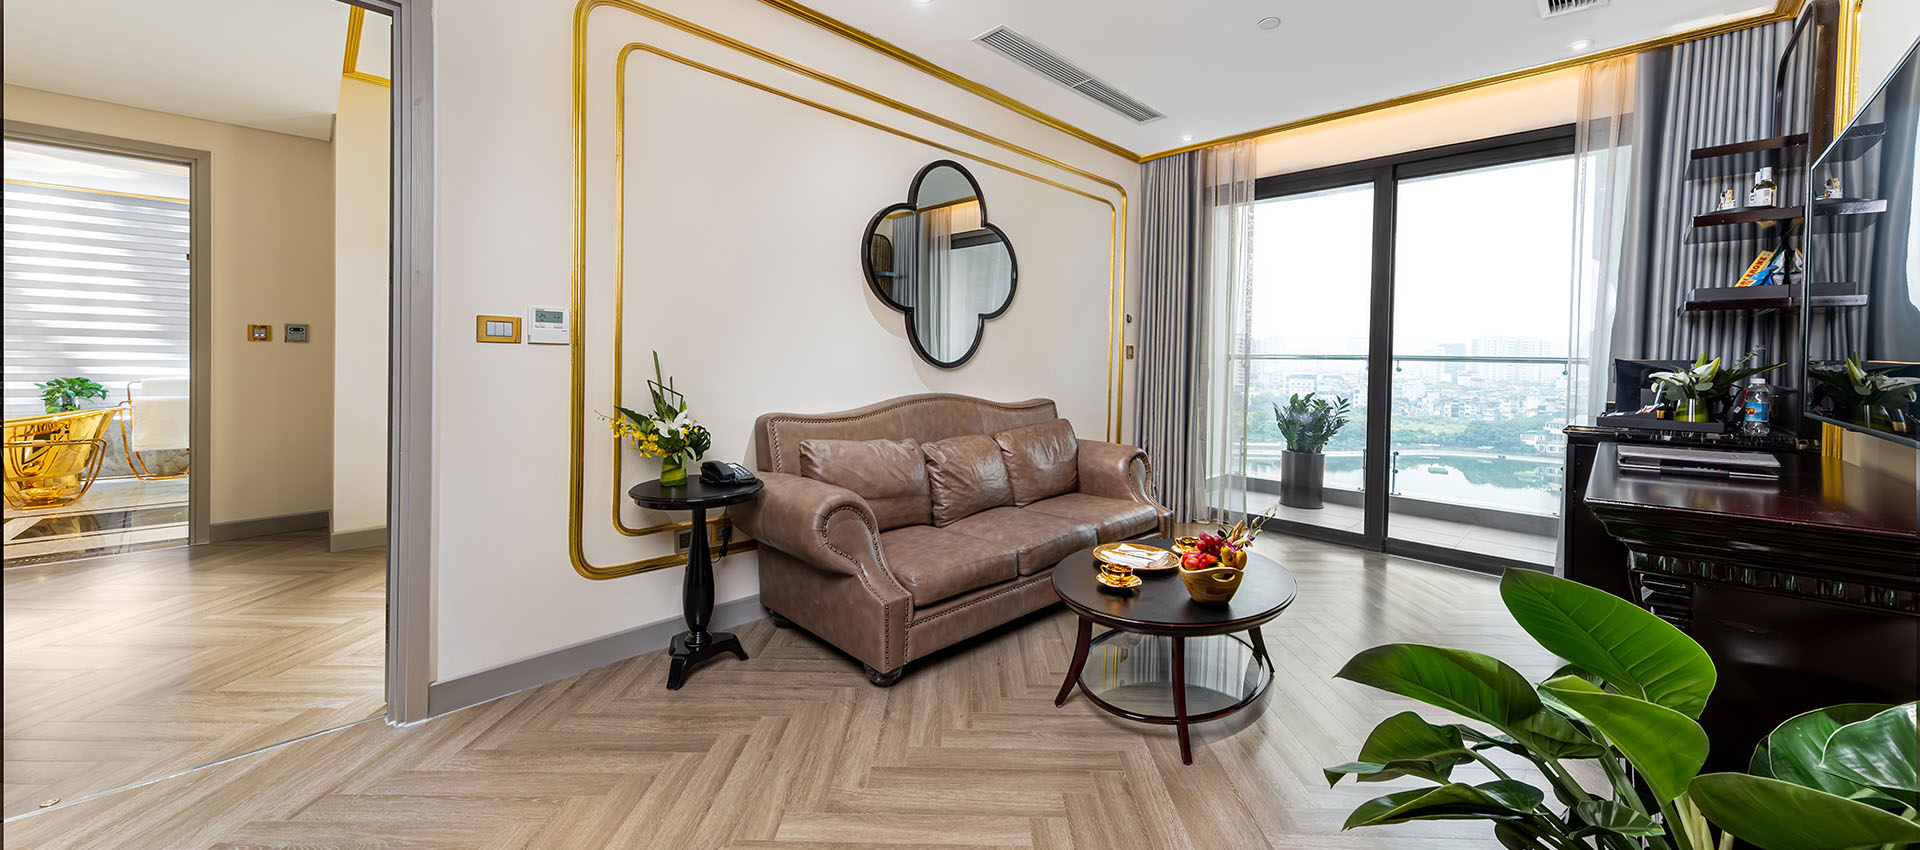 Deluxe Corner Suite - Phòng tại khách sạn Dát Vàng Hà Nội